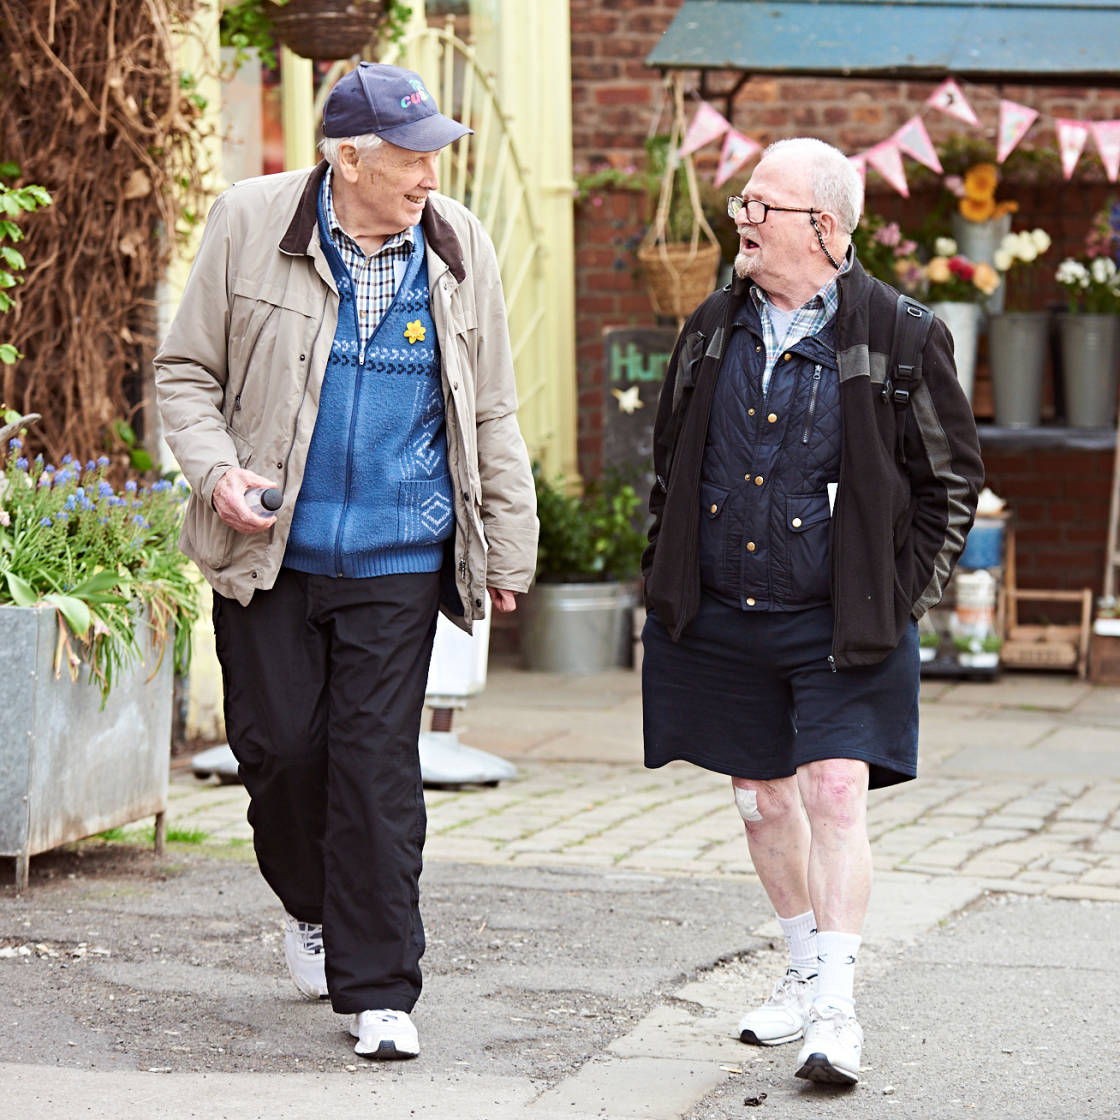 Two older men walking along a pedestrianised street